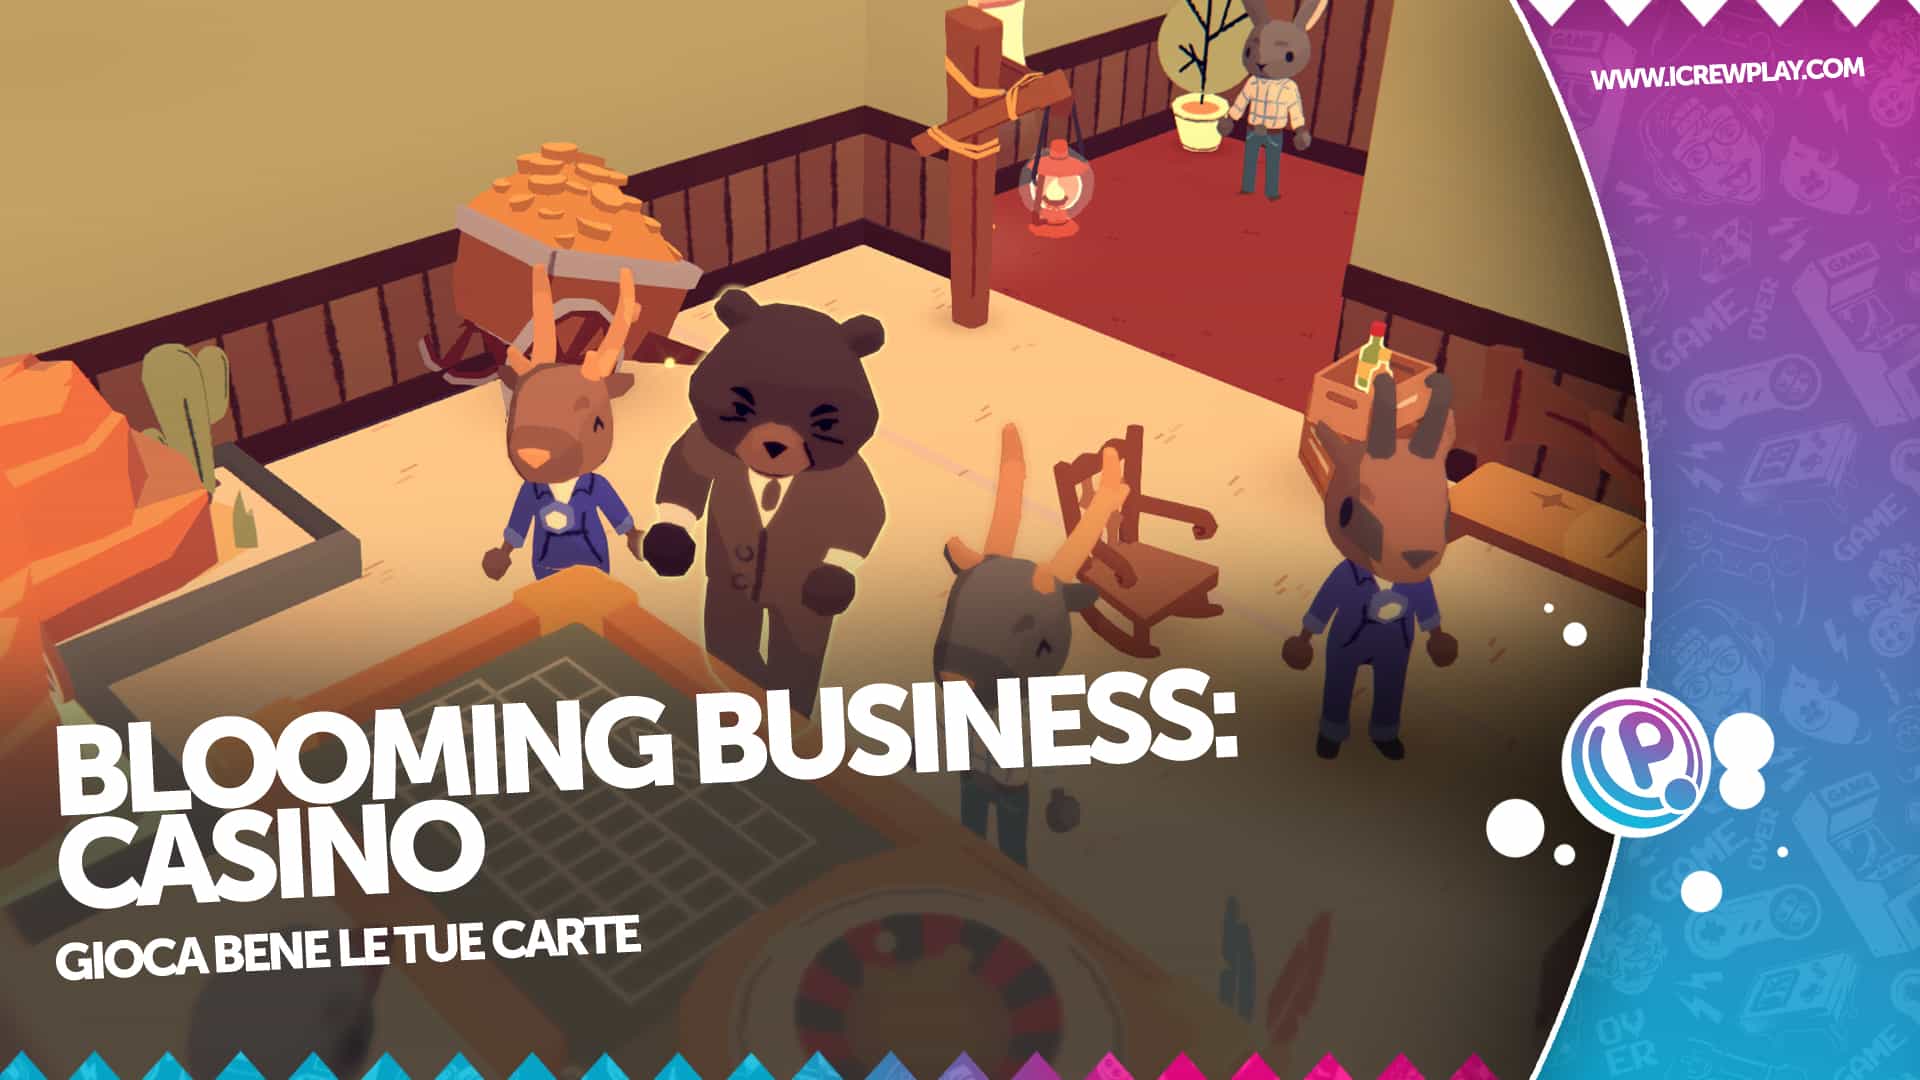 Blooming Business: Casino, pareri sulla demo 4